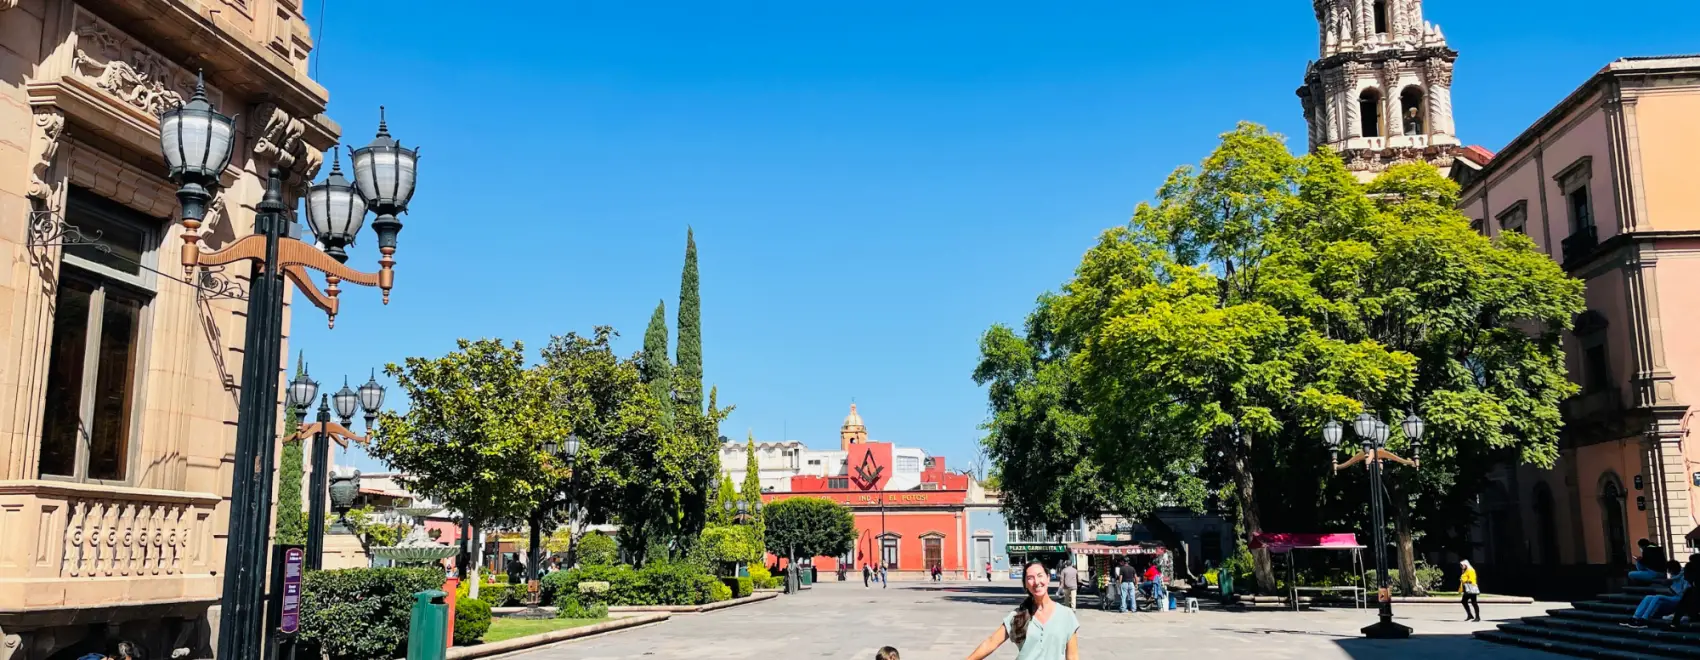 Top Plazas in San Luis Potosí Historic Center